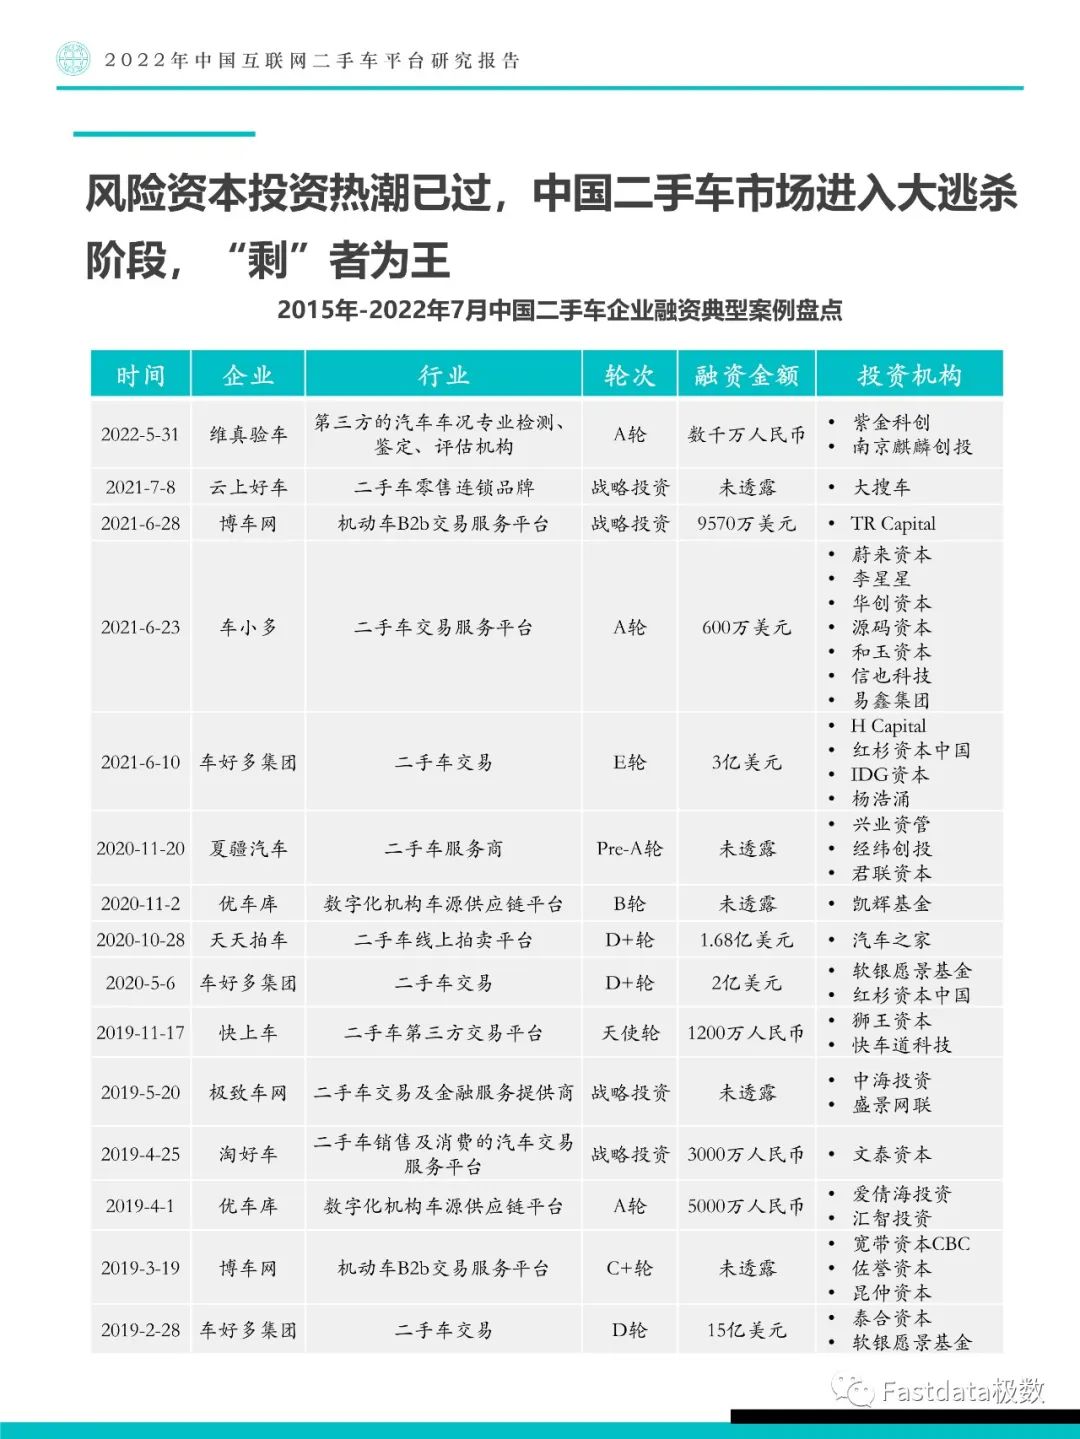 Fastdata极数：中国互联网二手车平台研究报告